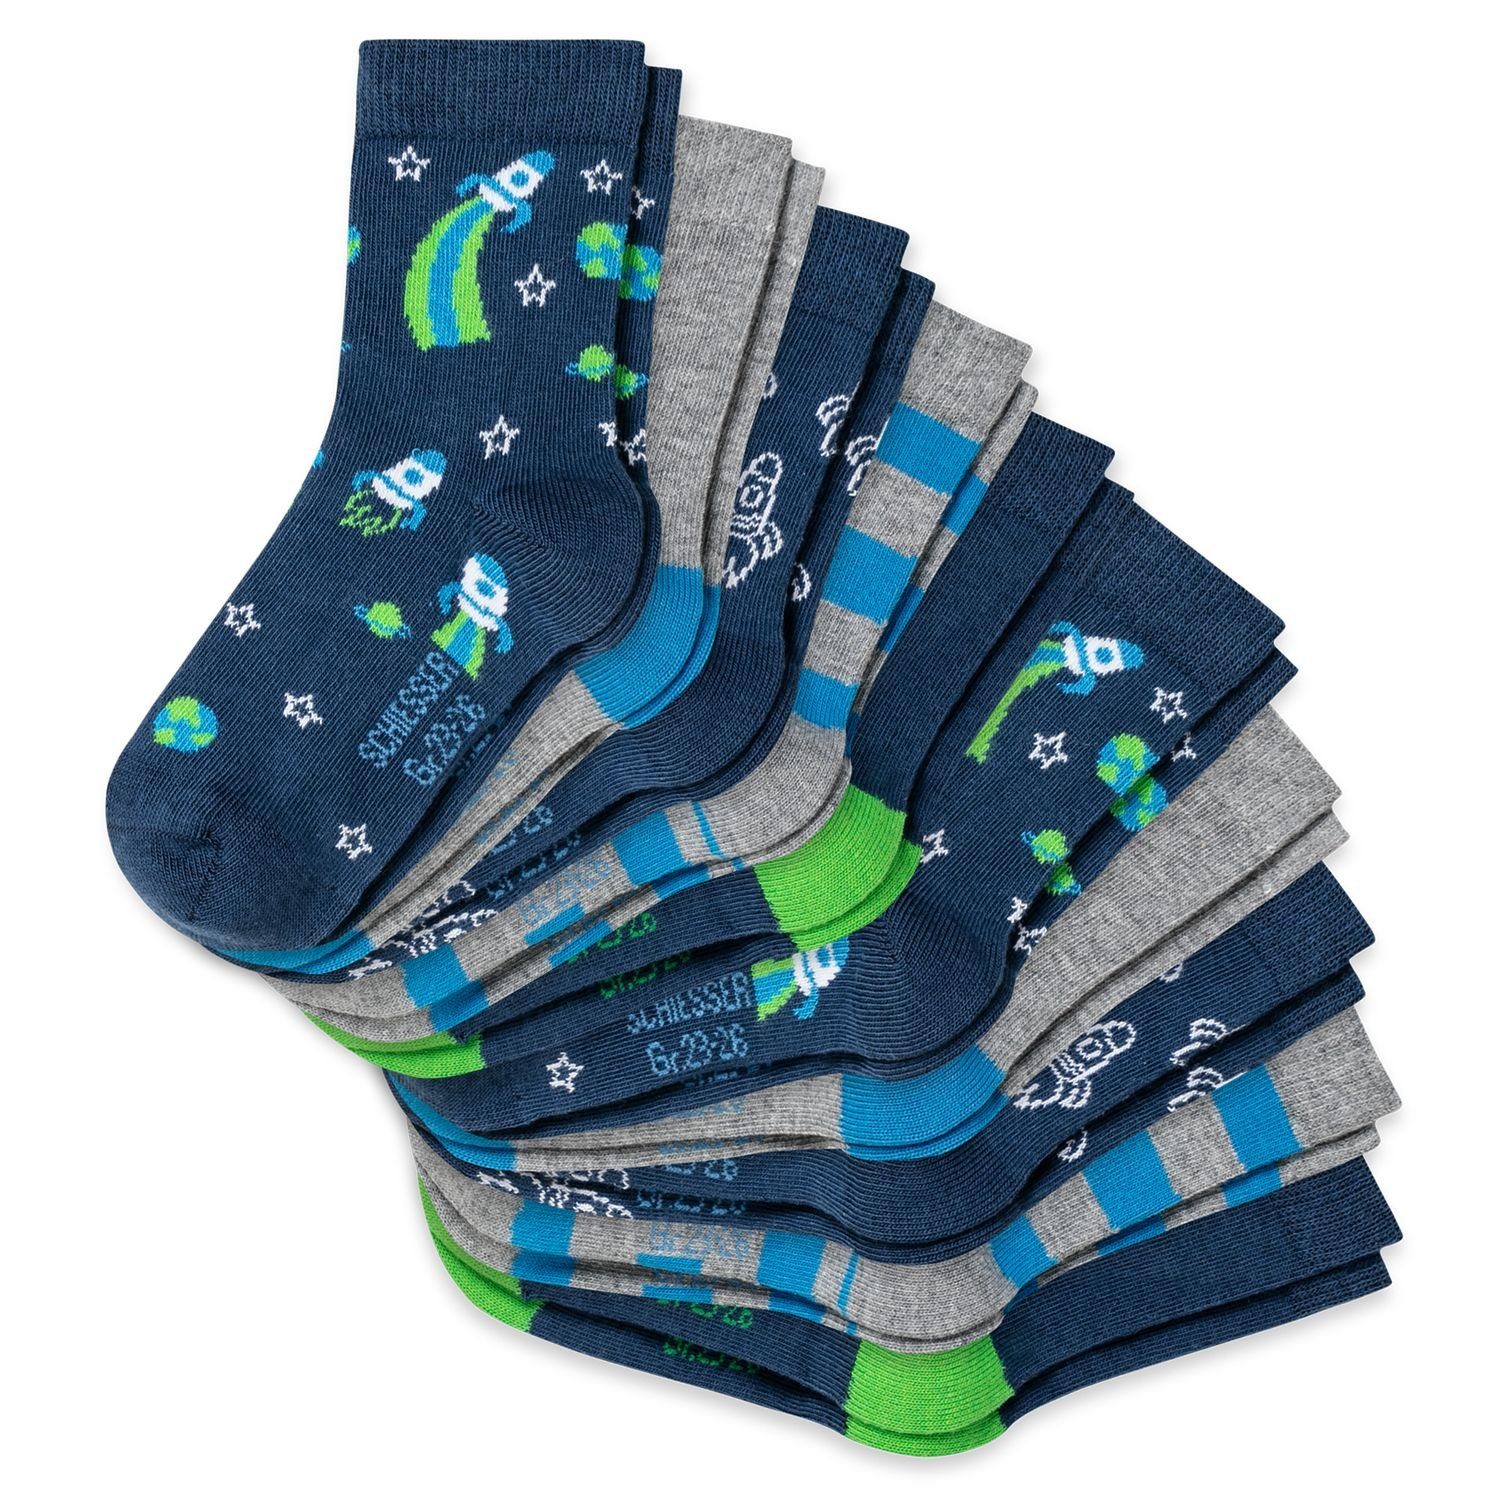 Schiesser Socken (10-Paar) Kinder, Mädchen, Jungen, langlebig, verstärkte  Belastungszonen, weich und angenehm (10 Paar) online kaufen | OTTO